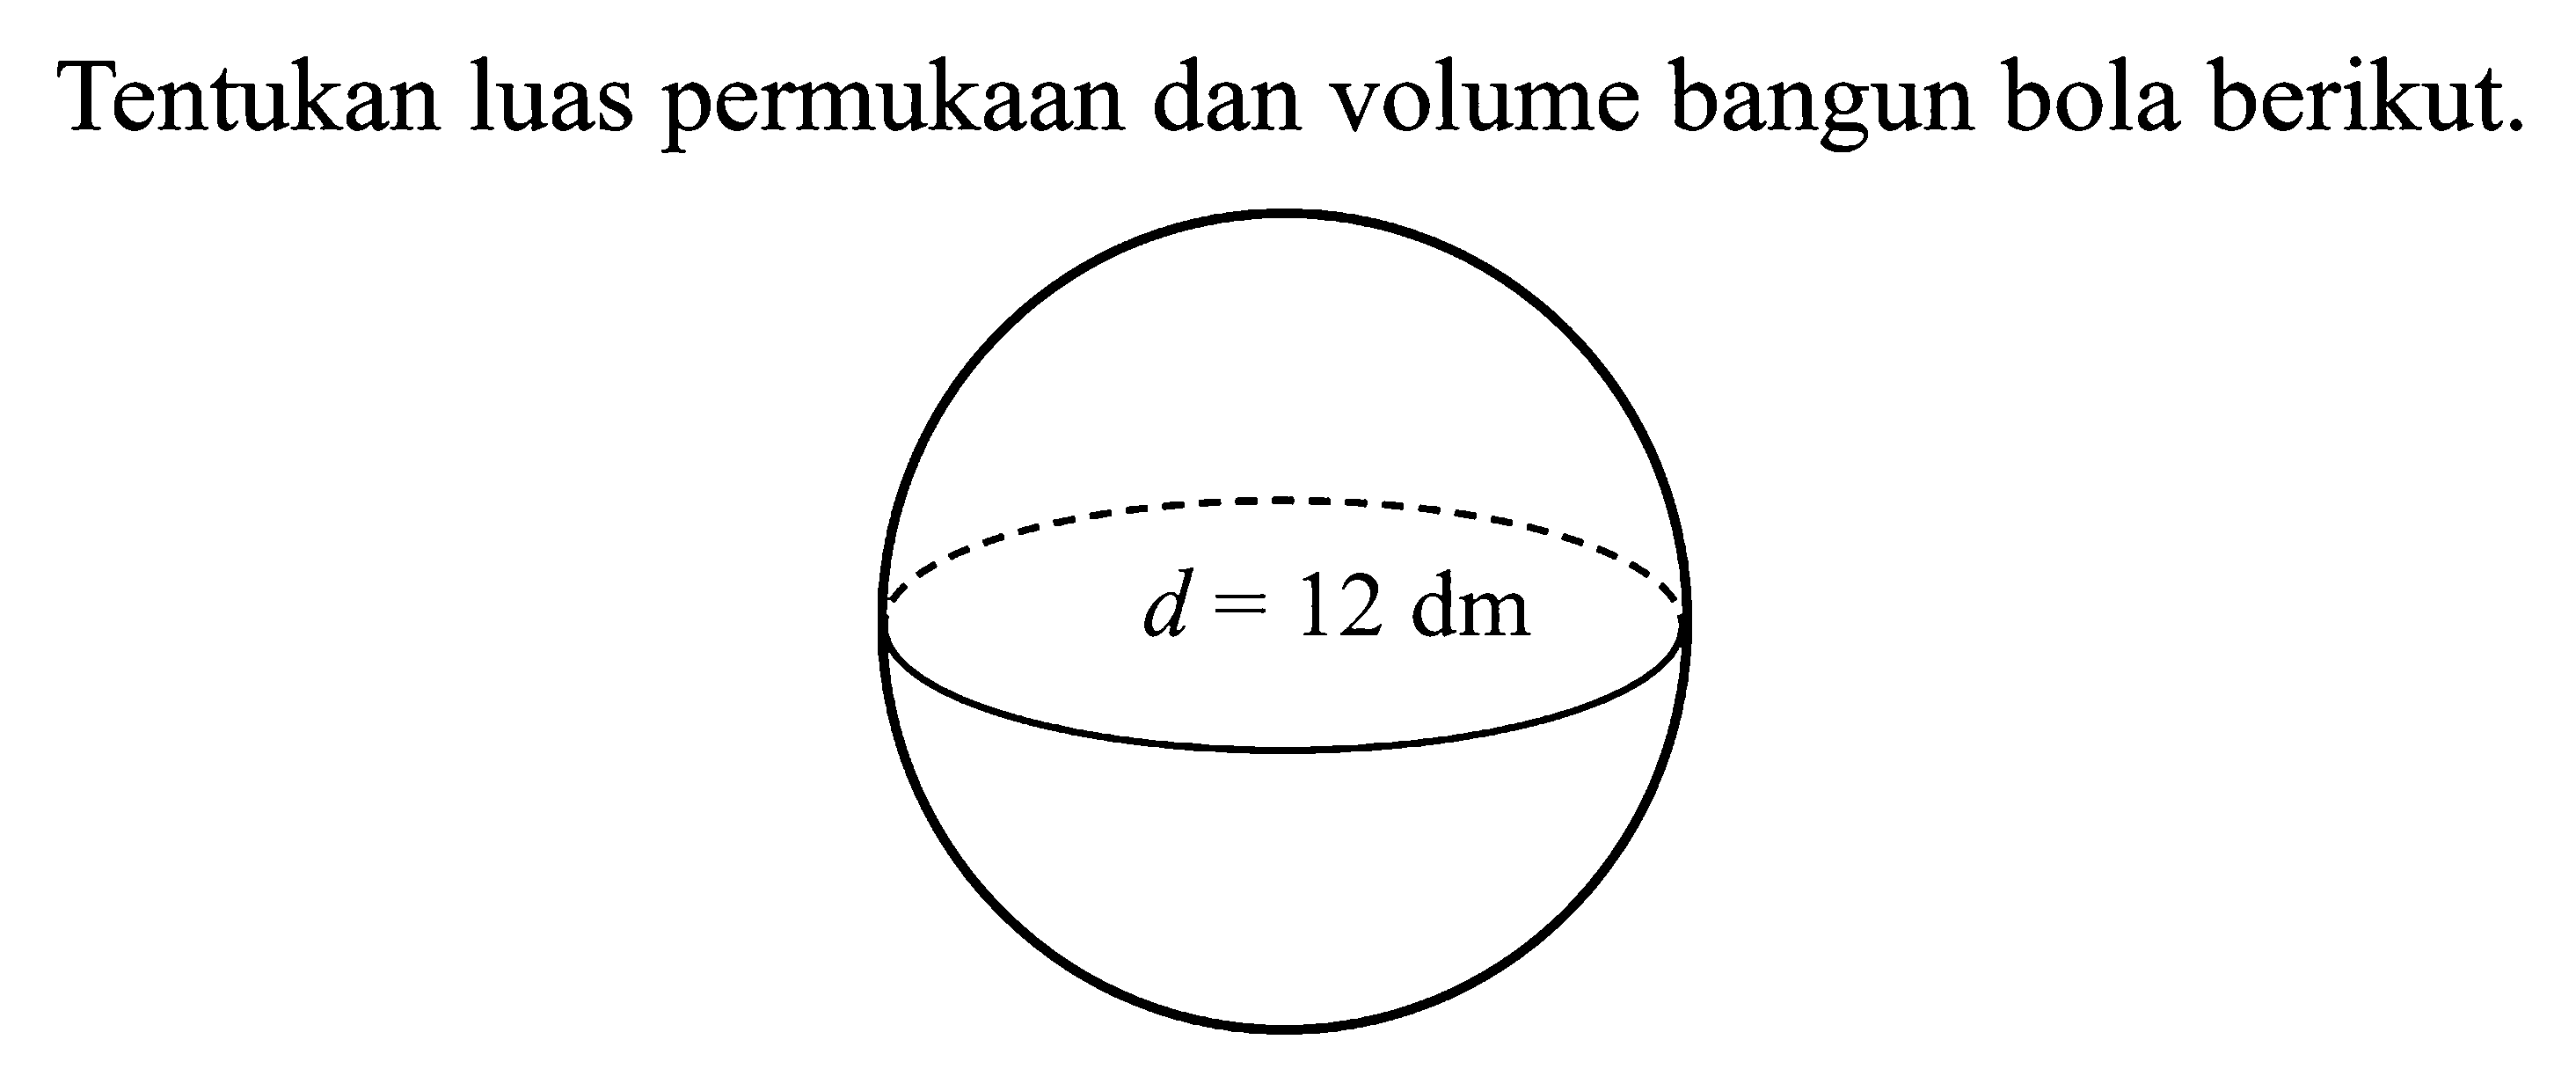 Tentukan luas permukaan dan volume bangun bola berikut. d=12 dm